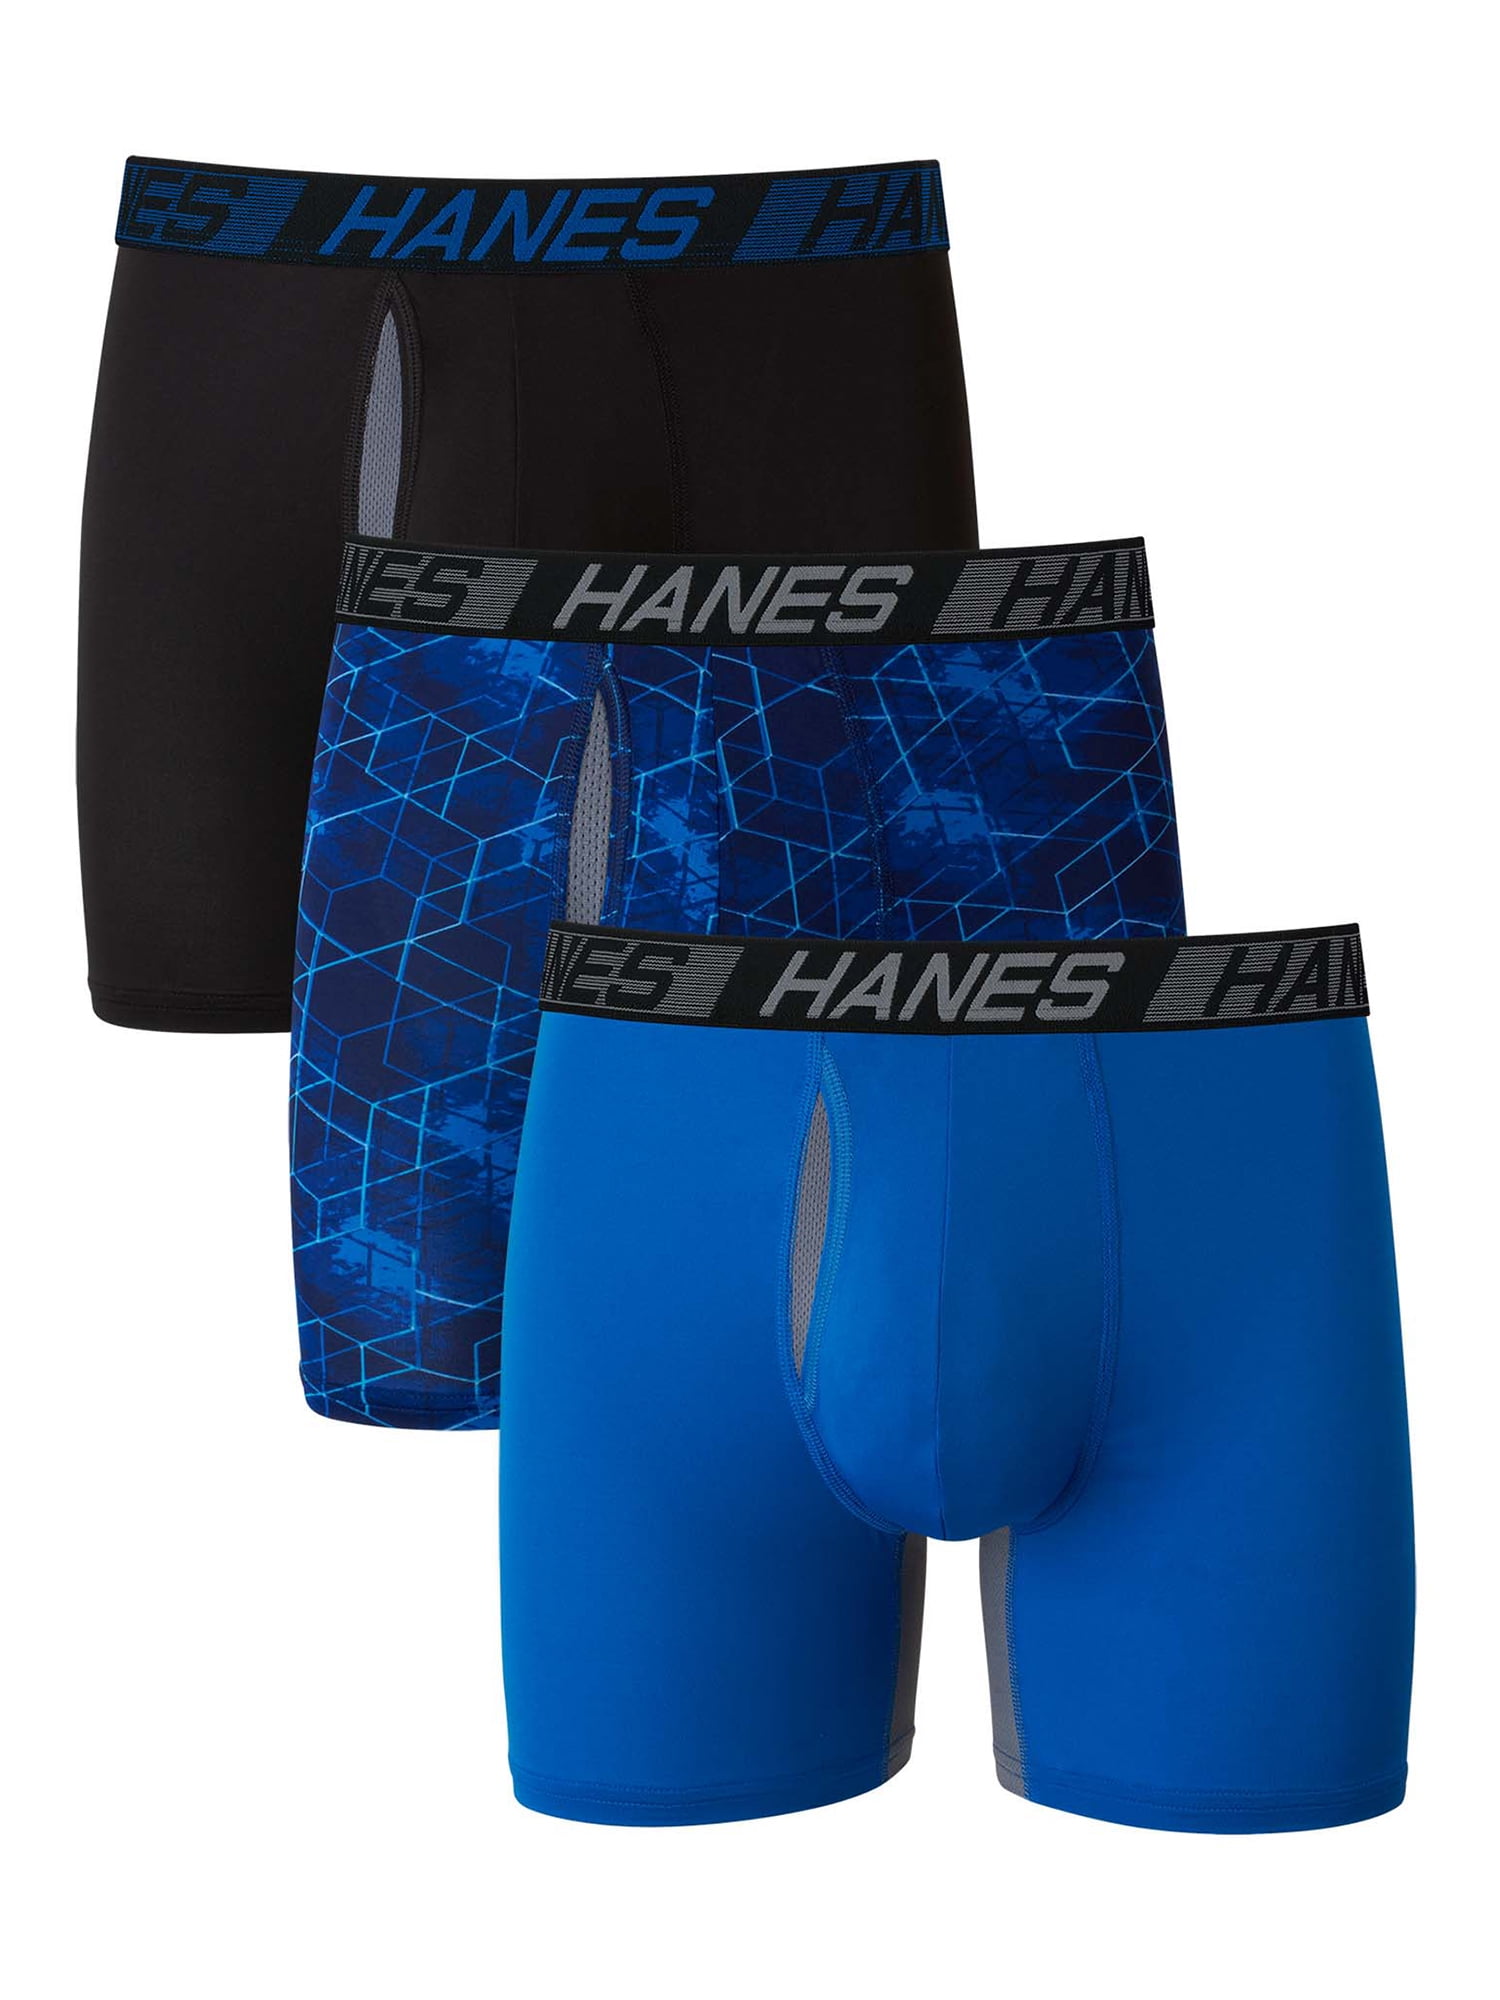 Hanes Men's Value Pack Black/Grey Tank Undershirts, 6 Pack 